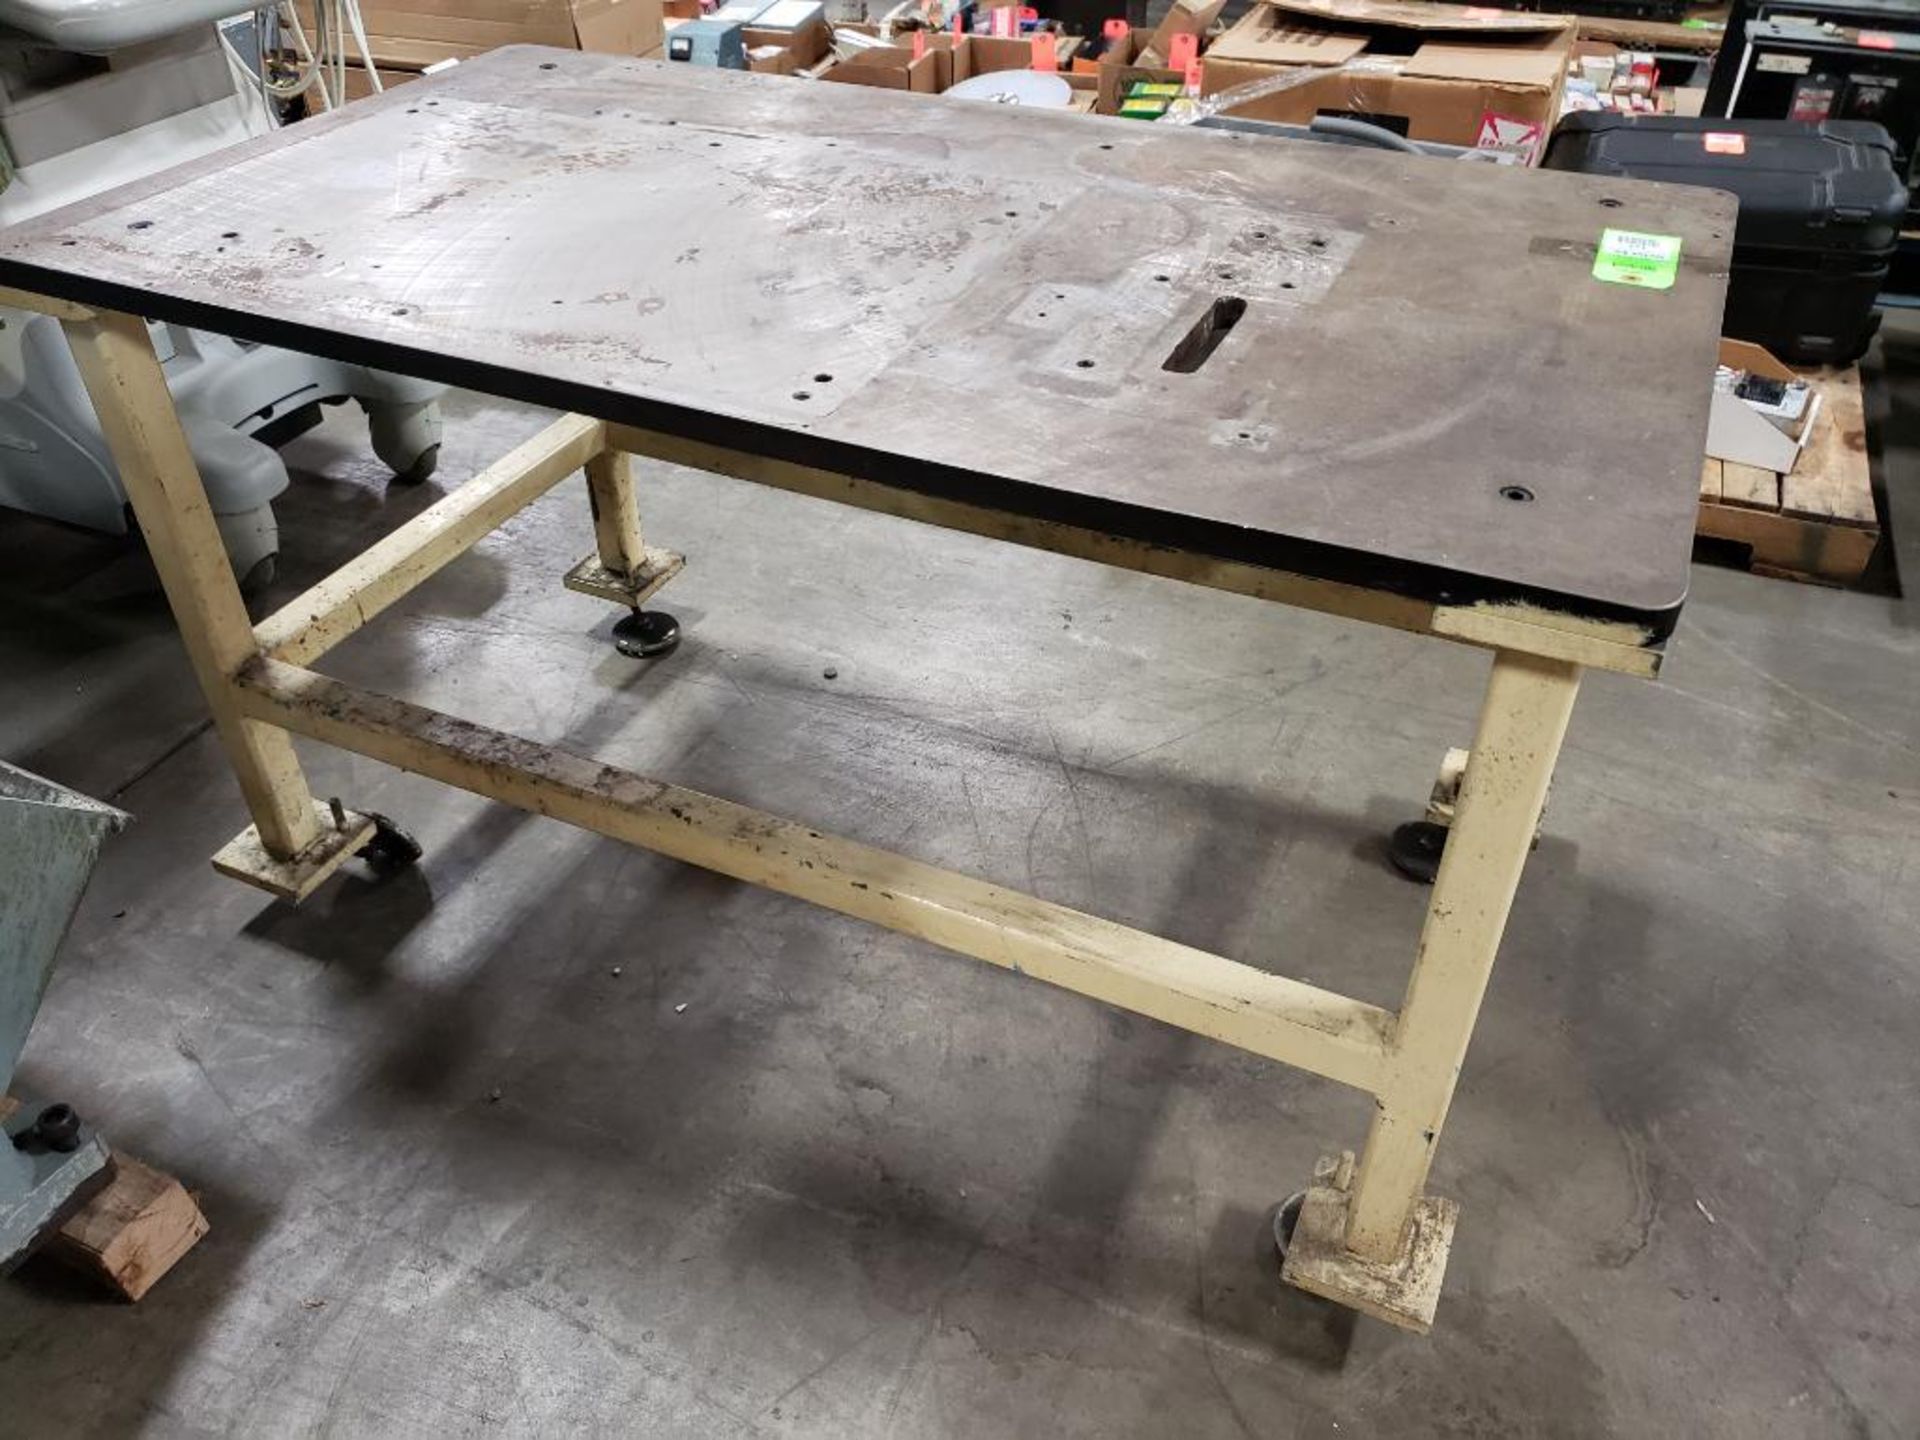 Industrial steel top welding work table. 54x30x32. LxWxH. - Image 3 of 6